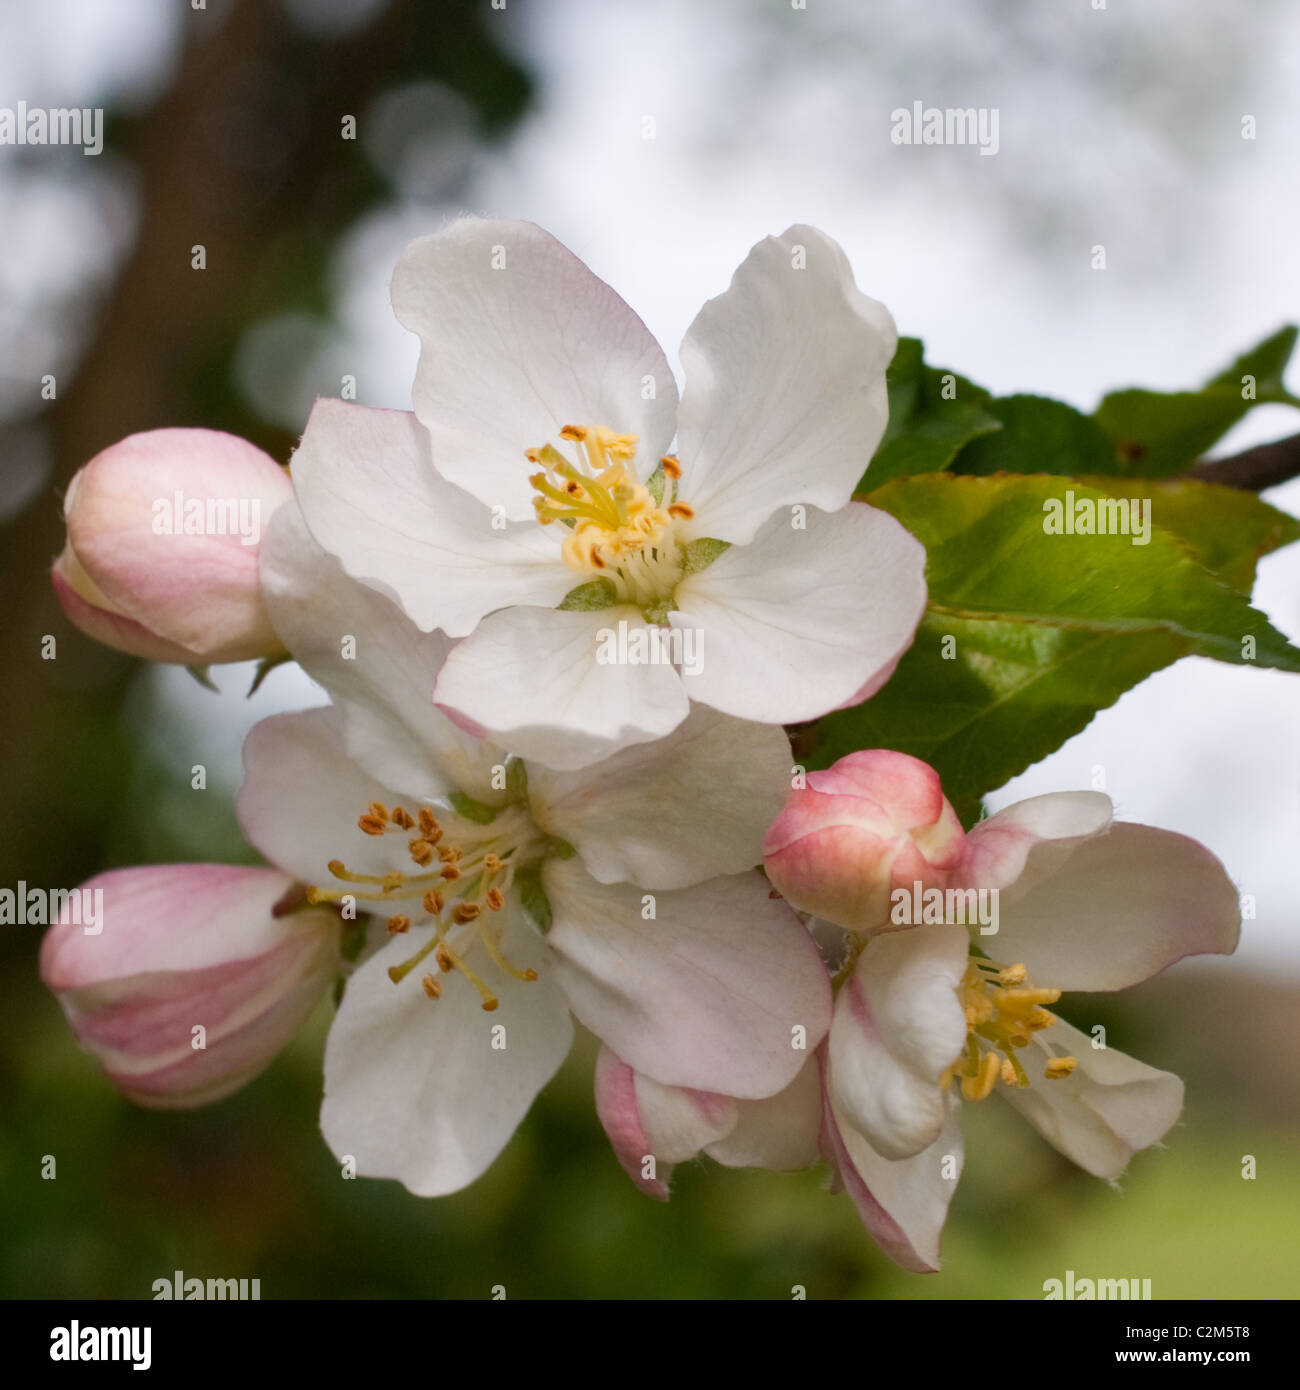 White apple blossom Stock Photo